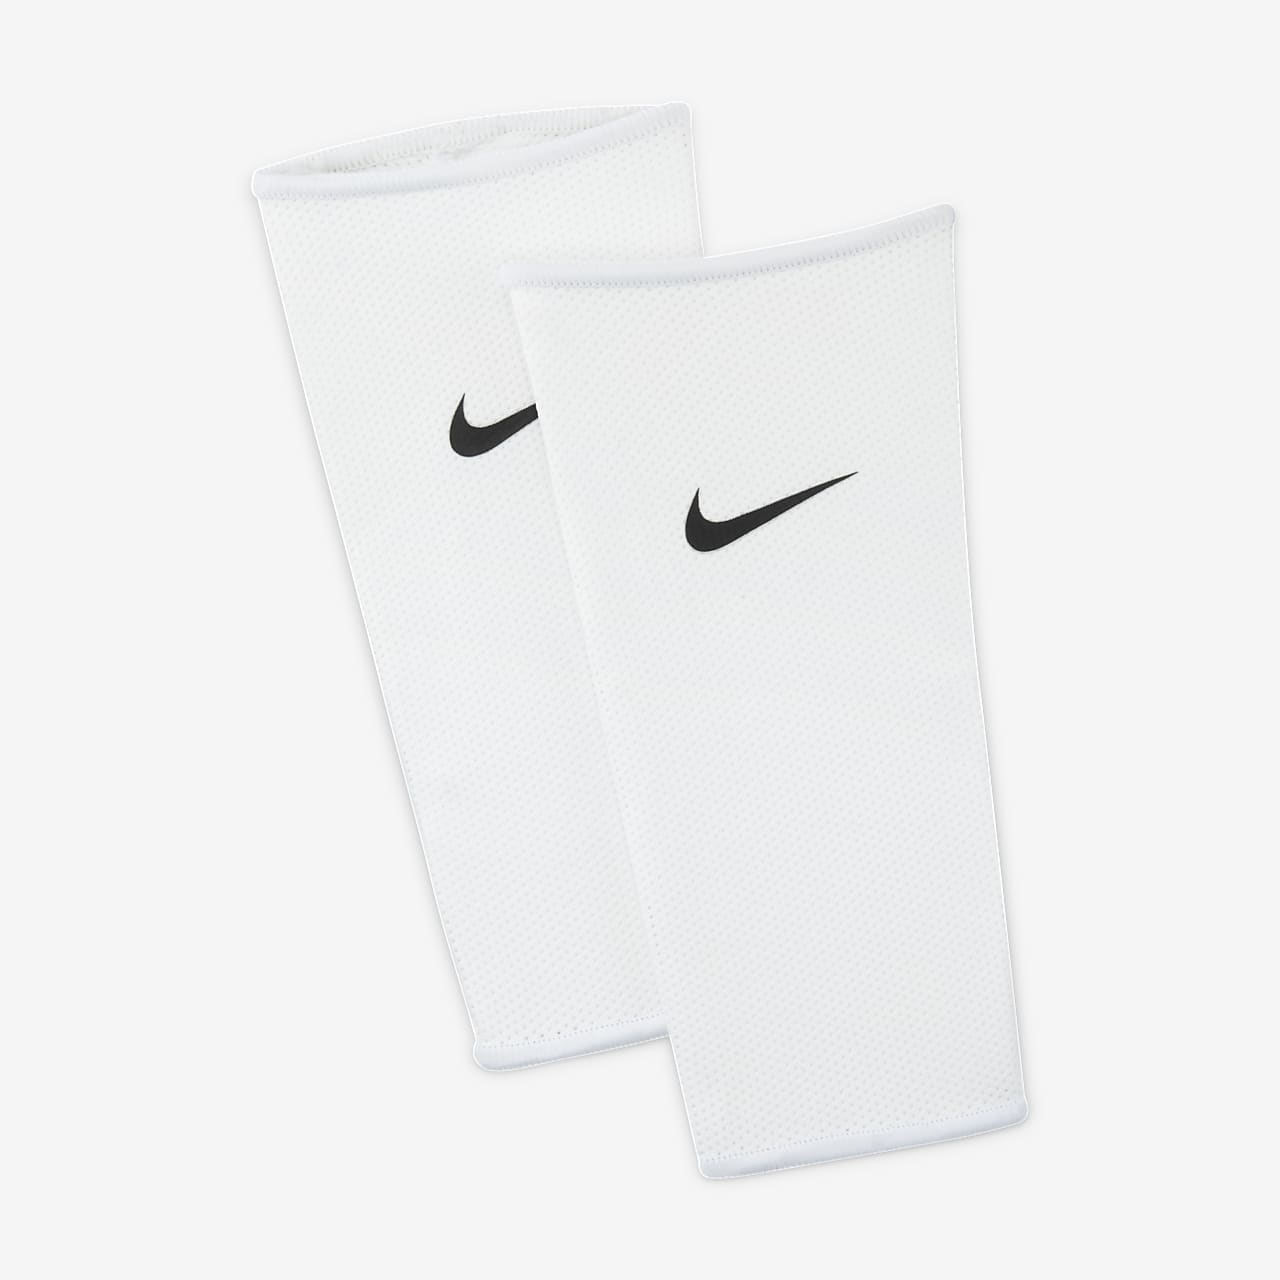 Nike Sujeta Espinilleras Se0173-011 Negro Talla Complementos - Xs